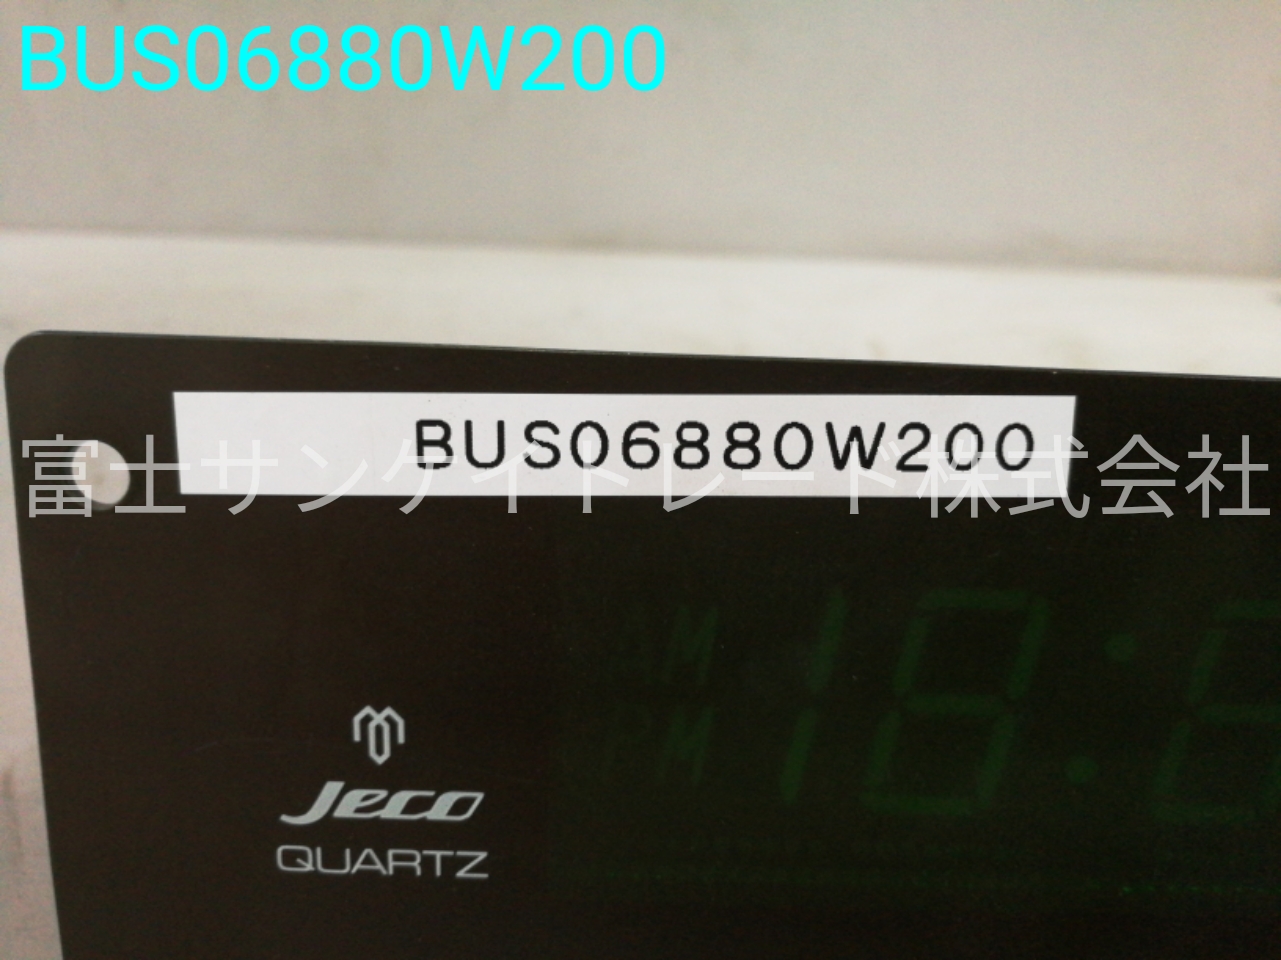 BUS06880W200